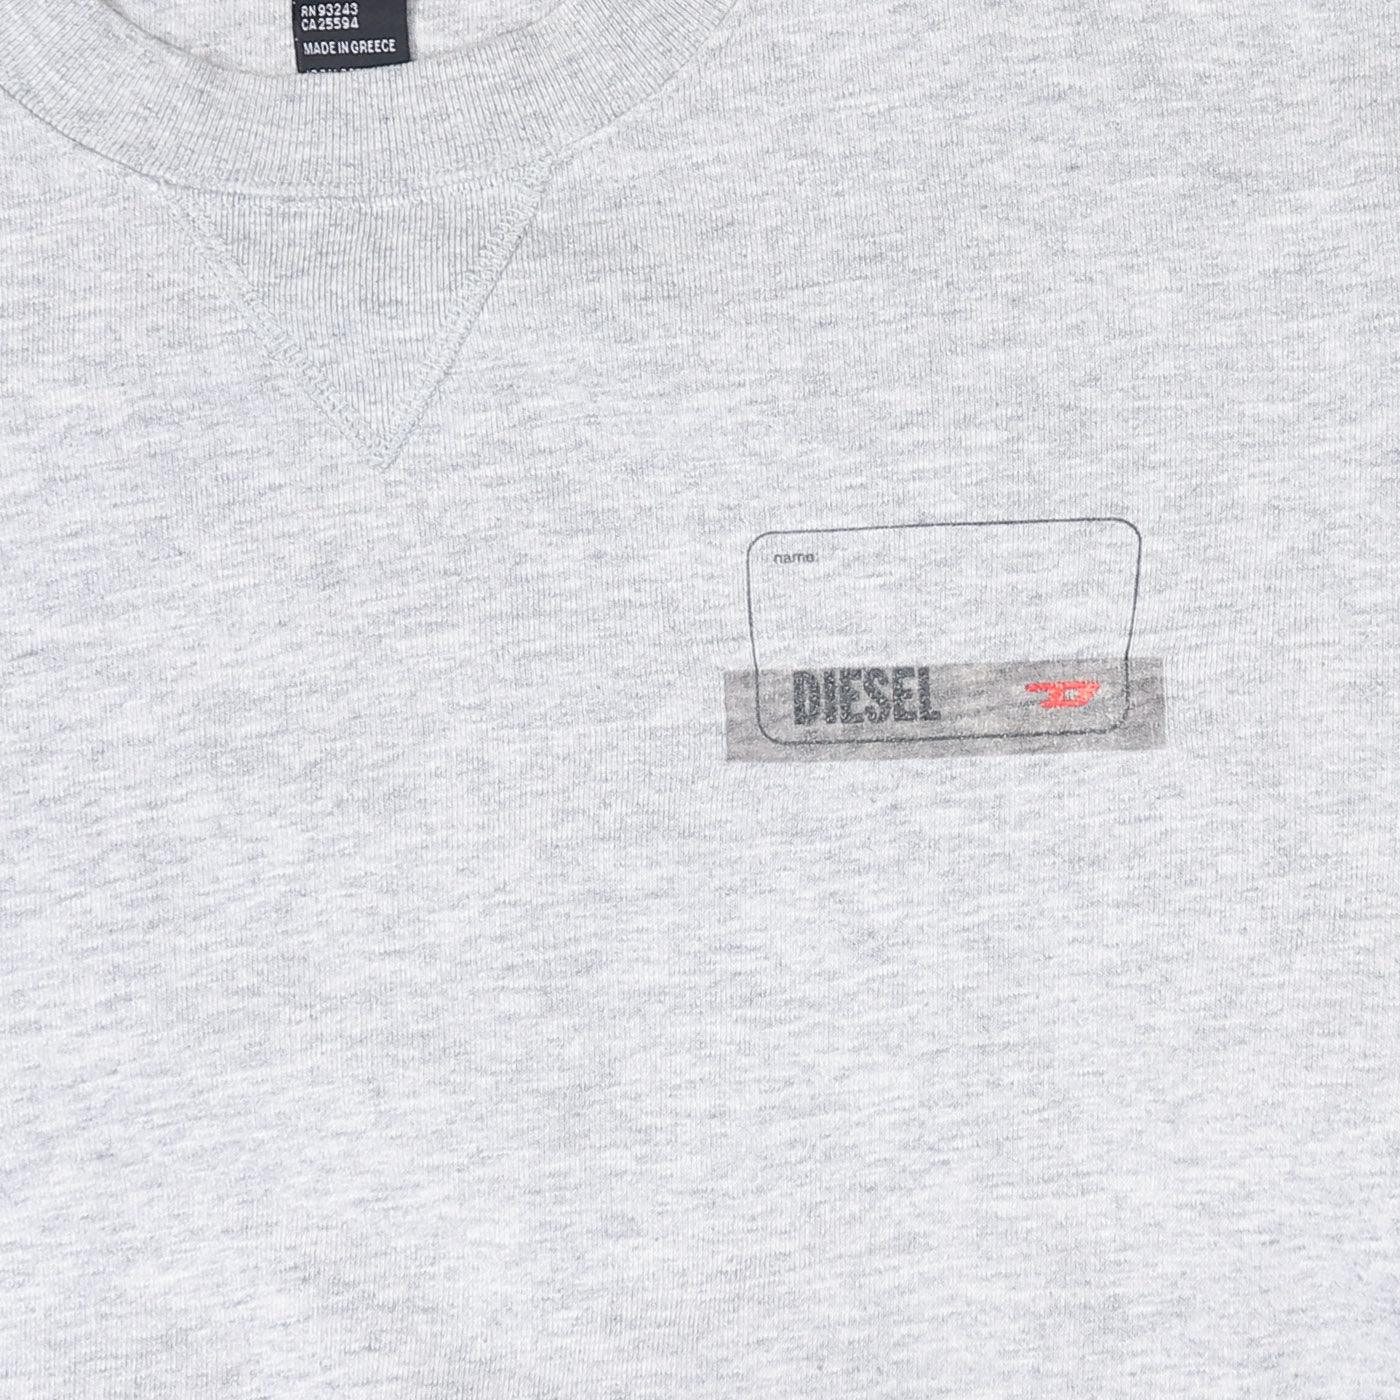 Diesel Vintage Sweatshirt - Medium - Known Source